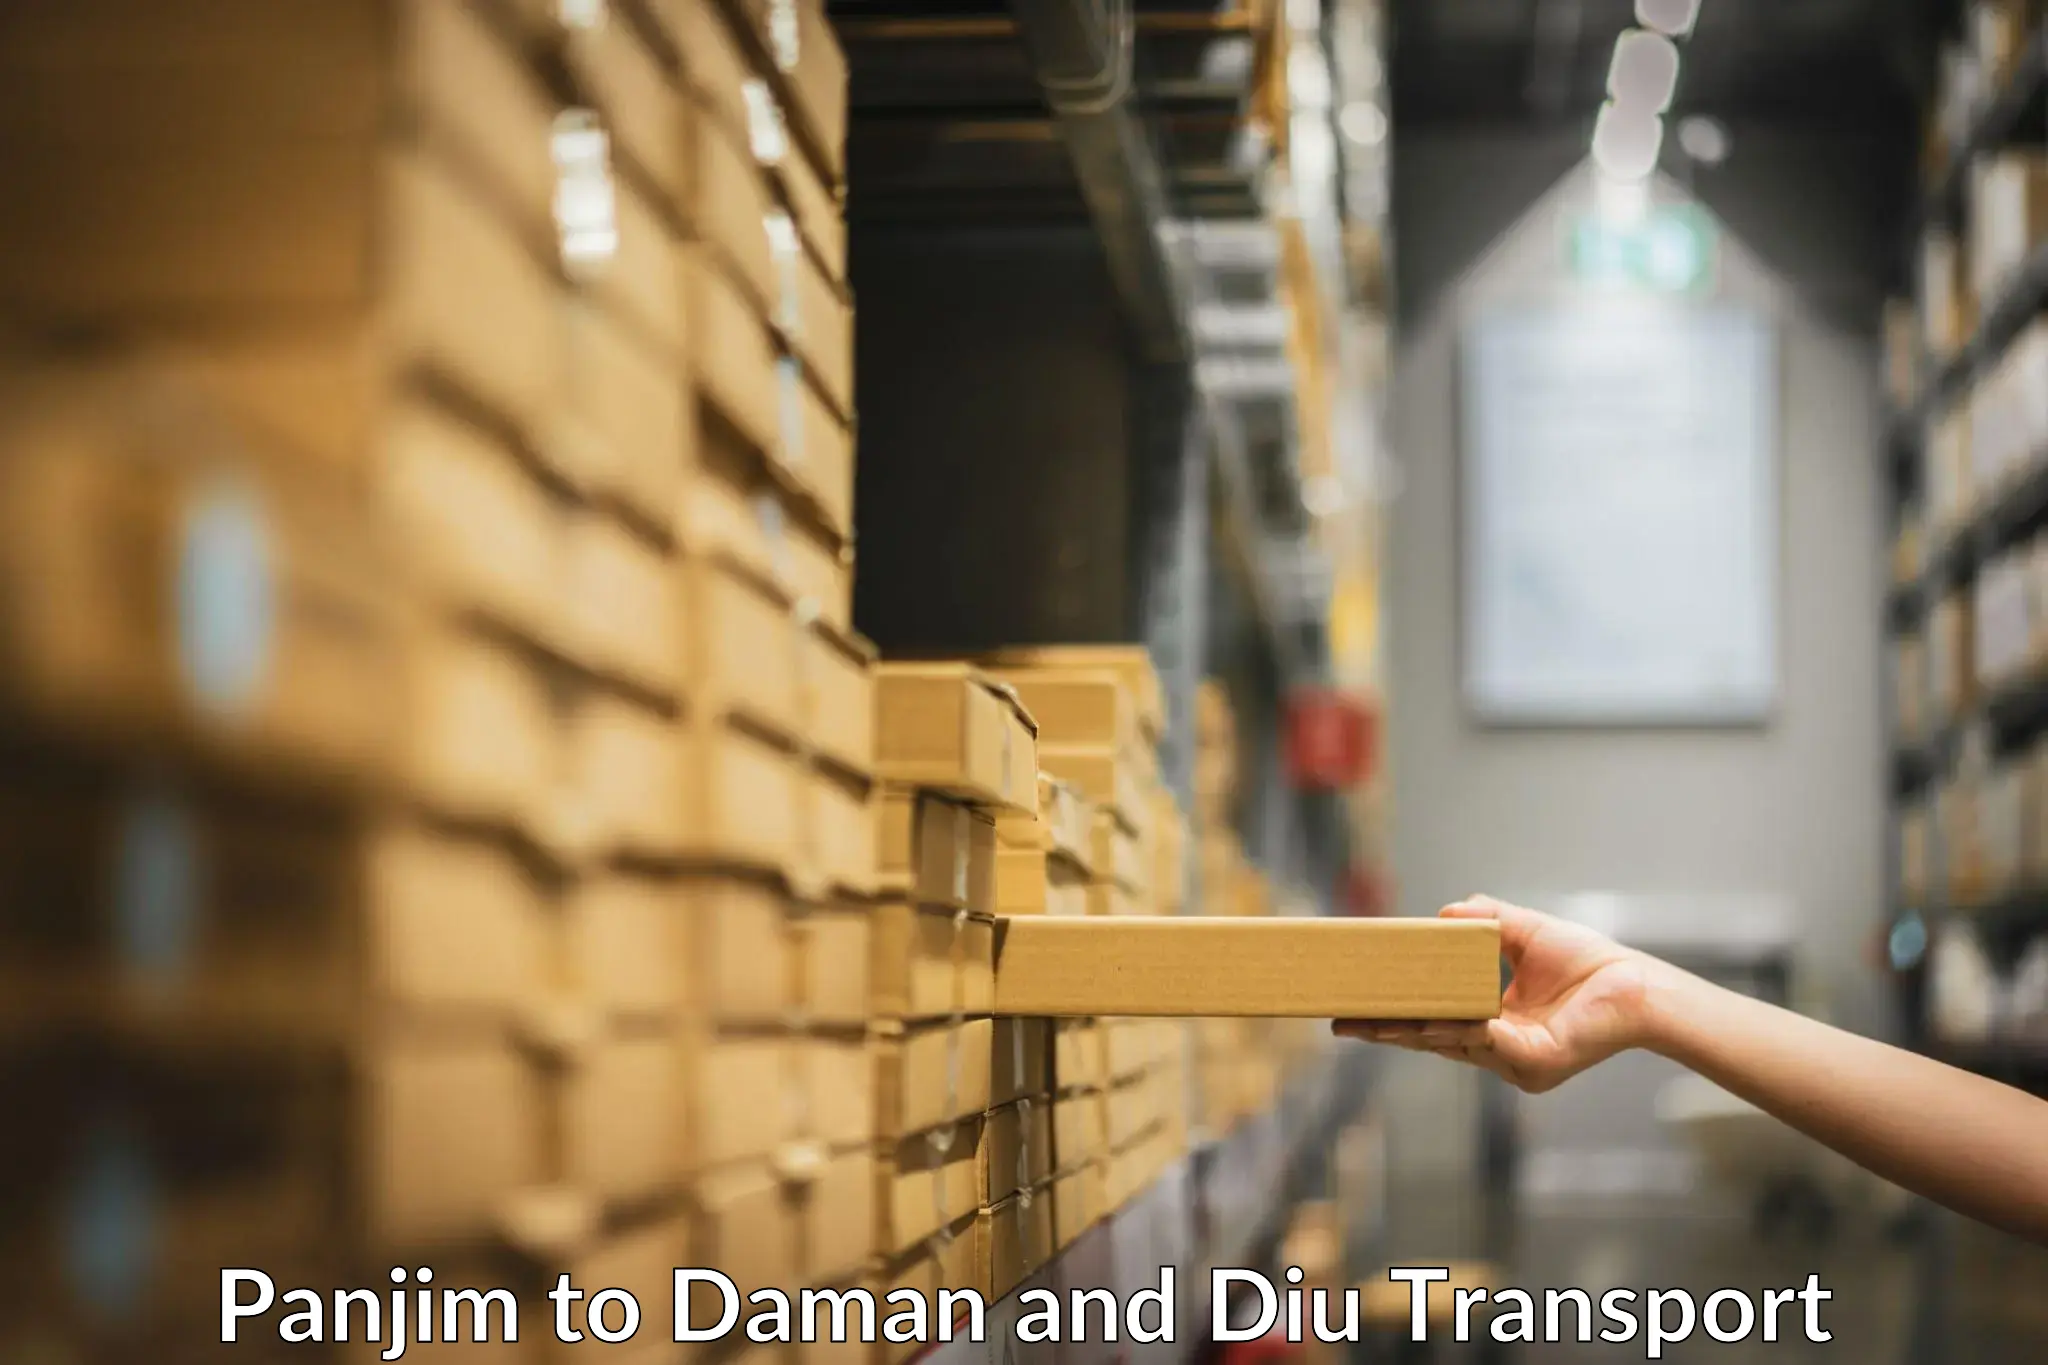 Cargo transport services Panjim to Diu